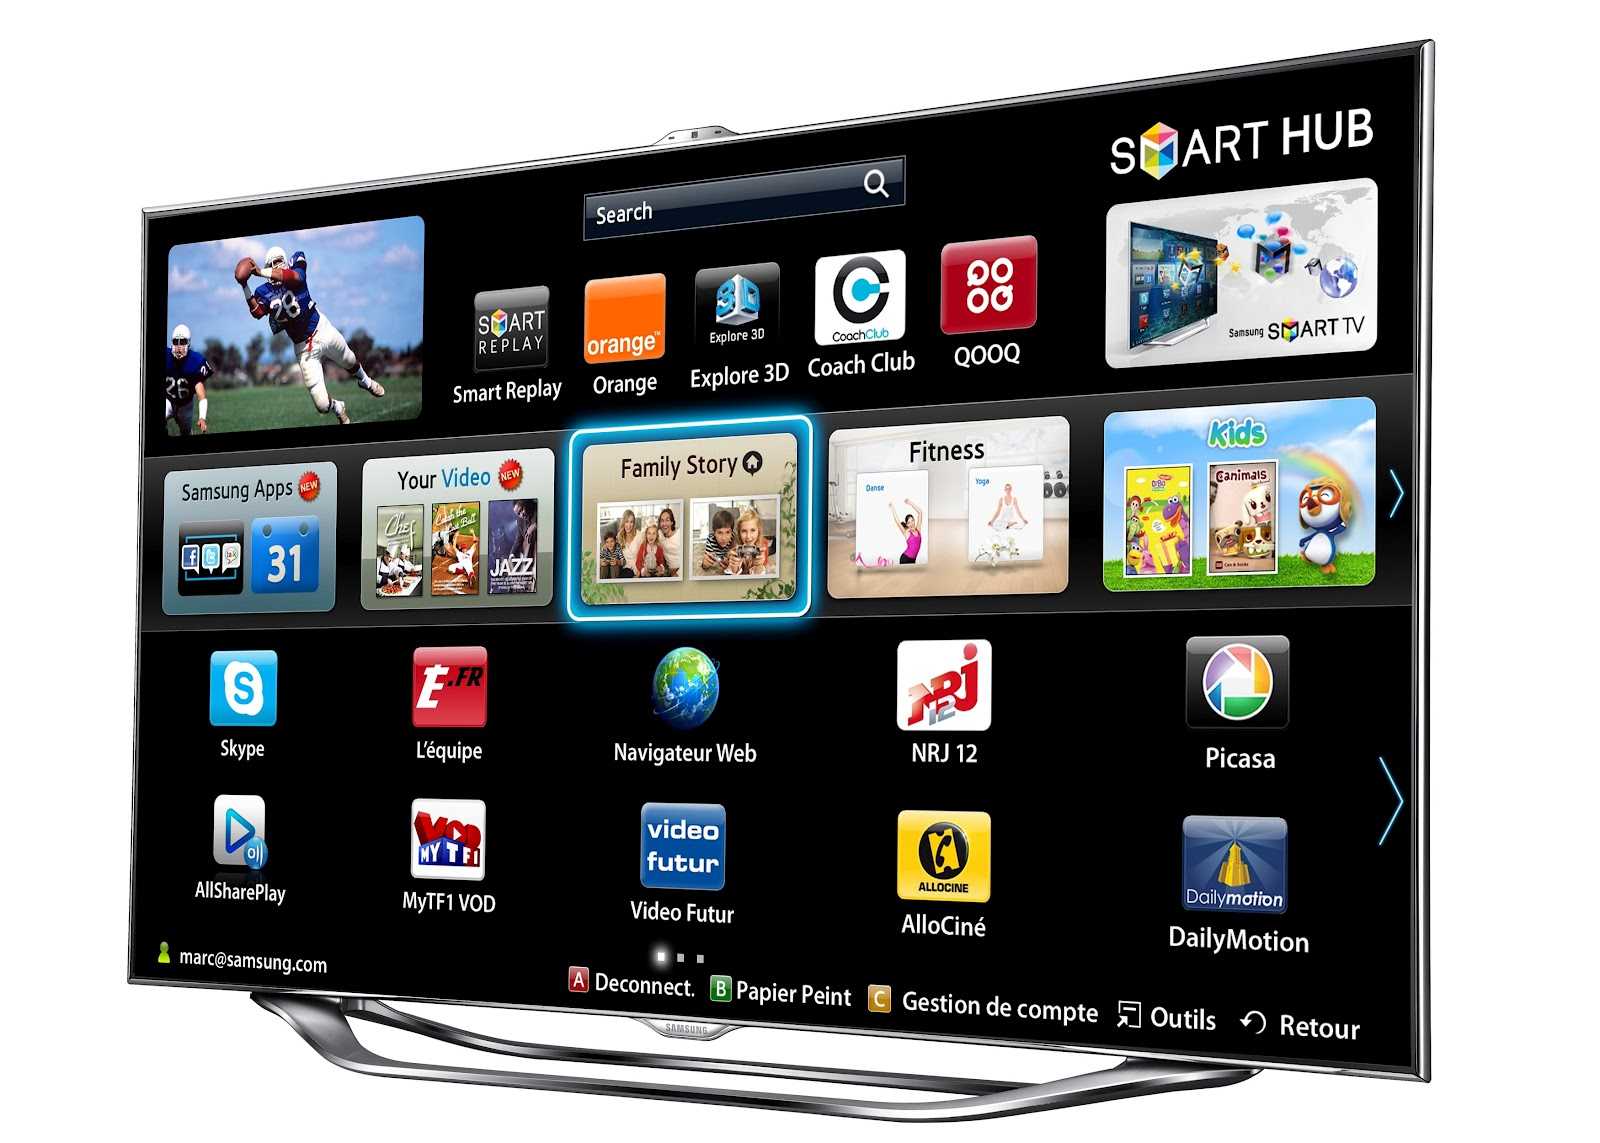 Купить телевизор самсунг смарт тв в москве. Samsung Smart TV. Смарт хаб смарт ТВ самсунг. Samsung Smart TV ue46es8000. Телевизор самсунг смарт ТВ 42.